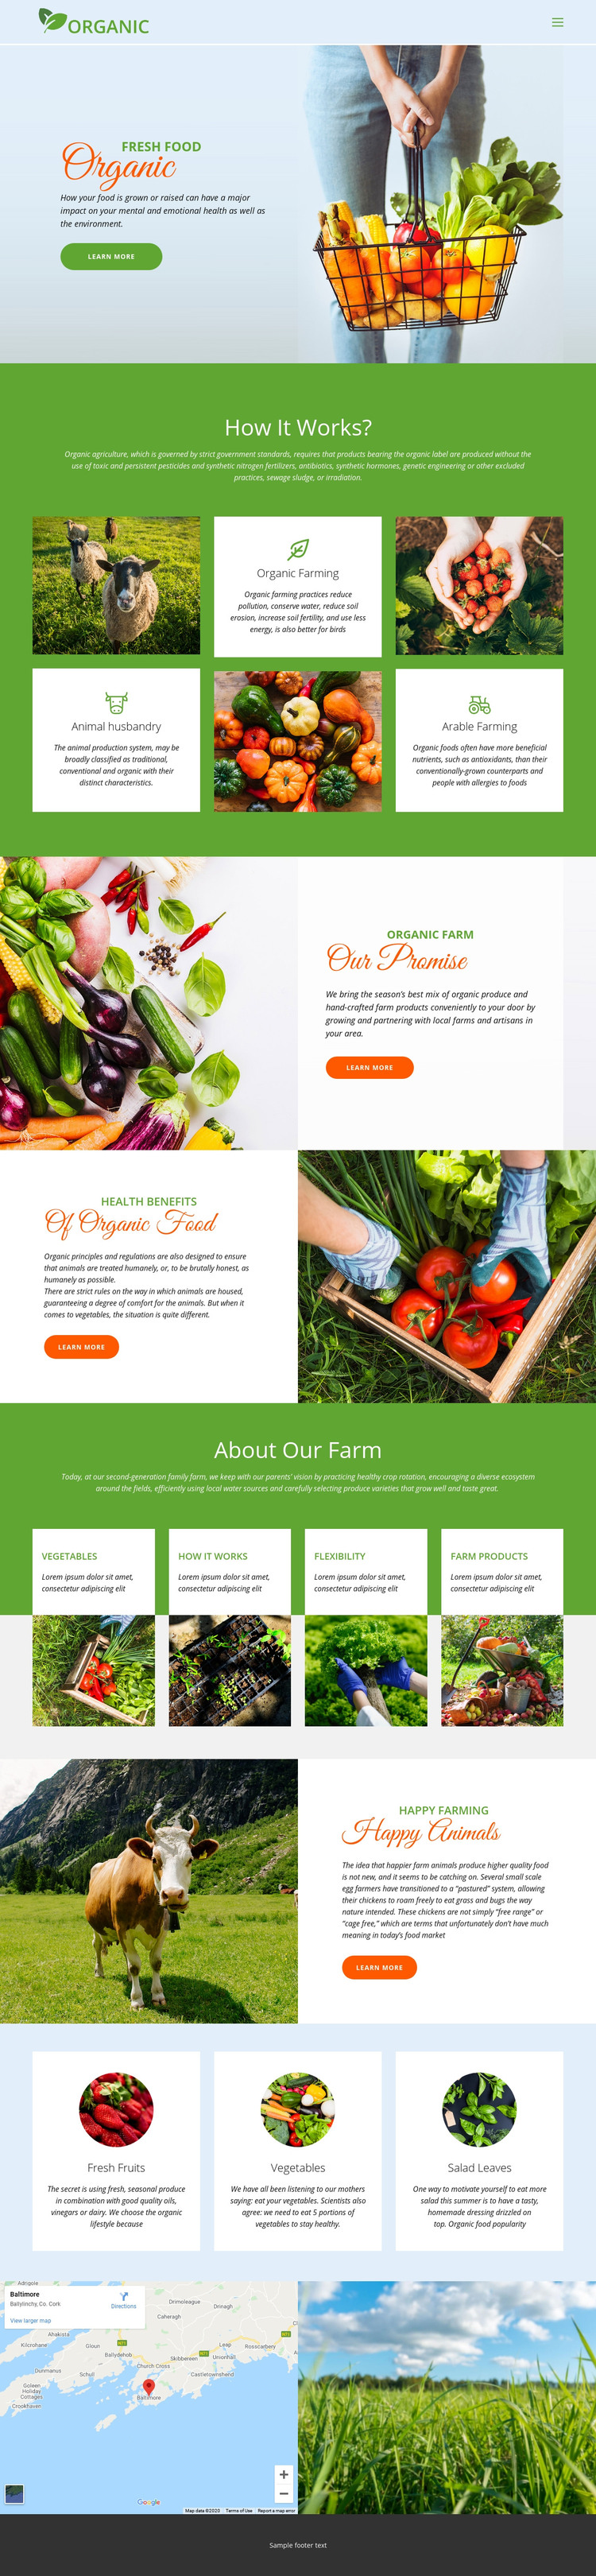 Eat best organic food Homepage Design